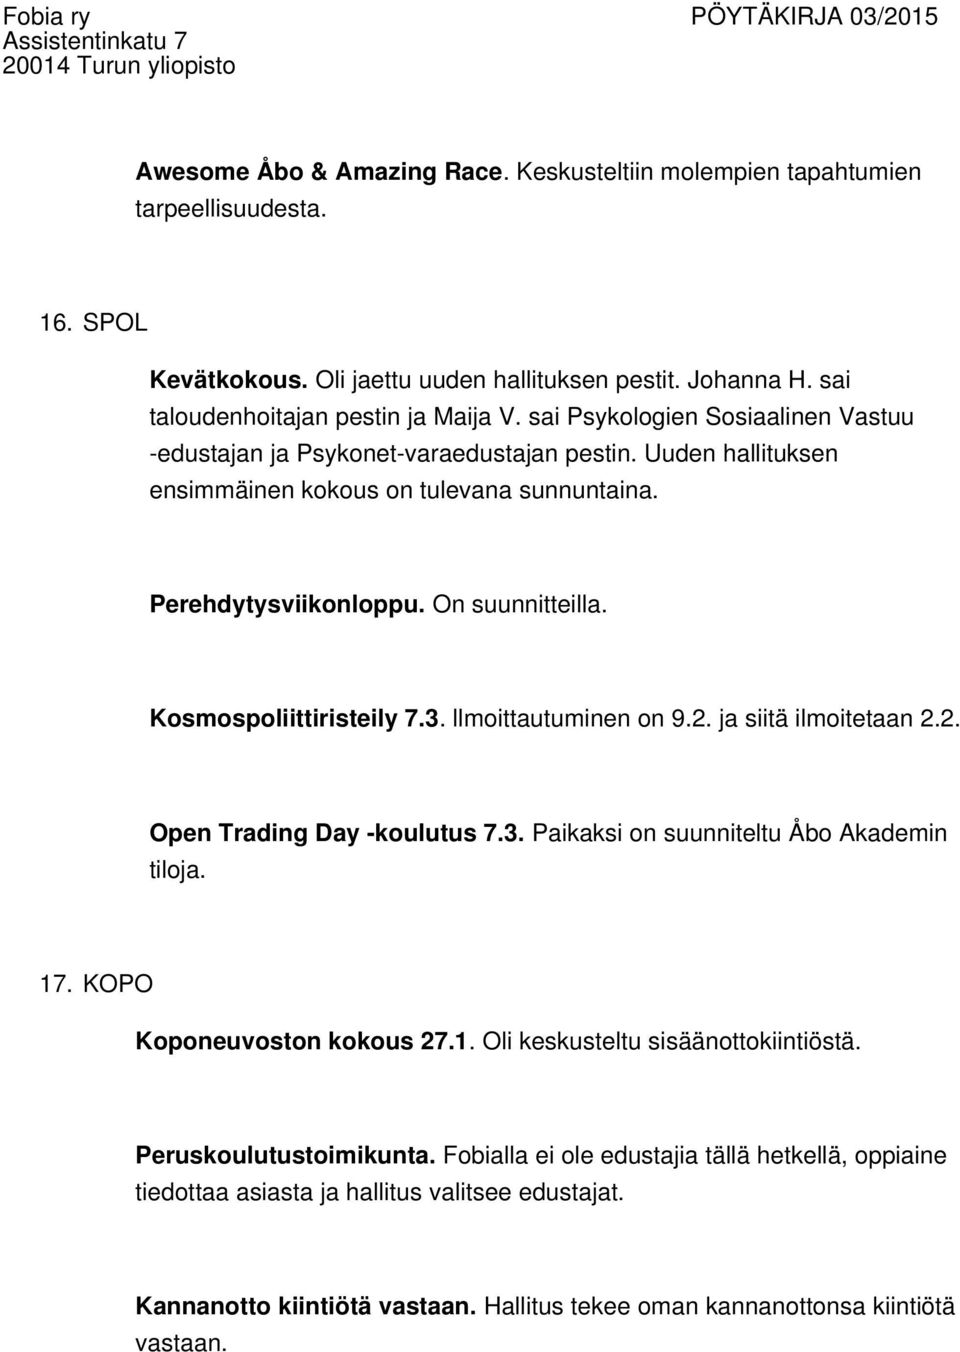 Kosmospoliittiristeily 7.3. llmoittautuminen on 9.2. ja siitä ilmoitetaan 2.2. Open Trading Day -koulutus 7.3. Paikaksi on suunniteltu Åbo Akademin tiloja. 17. KOPO Koponeuvoston kokous 27.1. Oli keskusteltu sisäänottokiintiöstä.